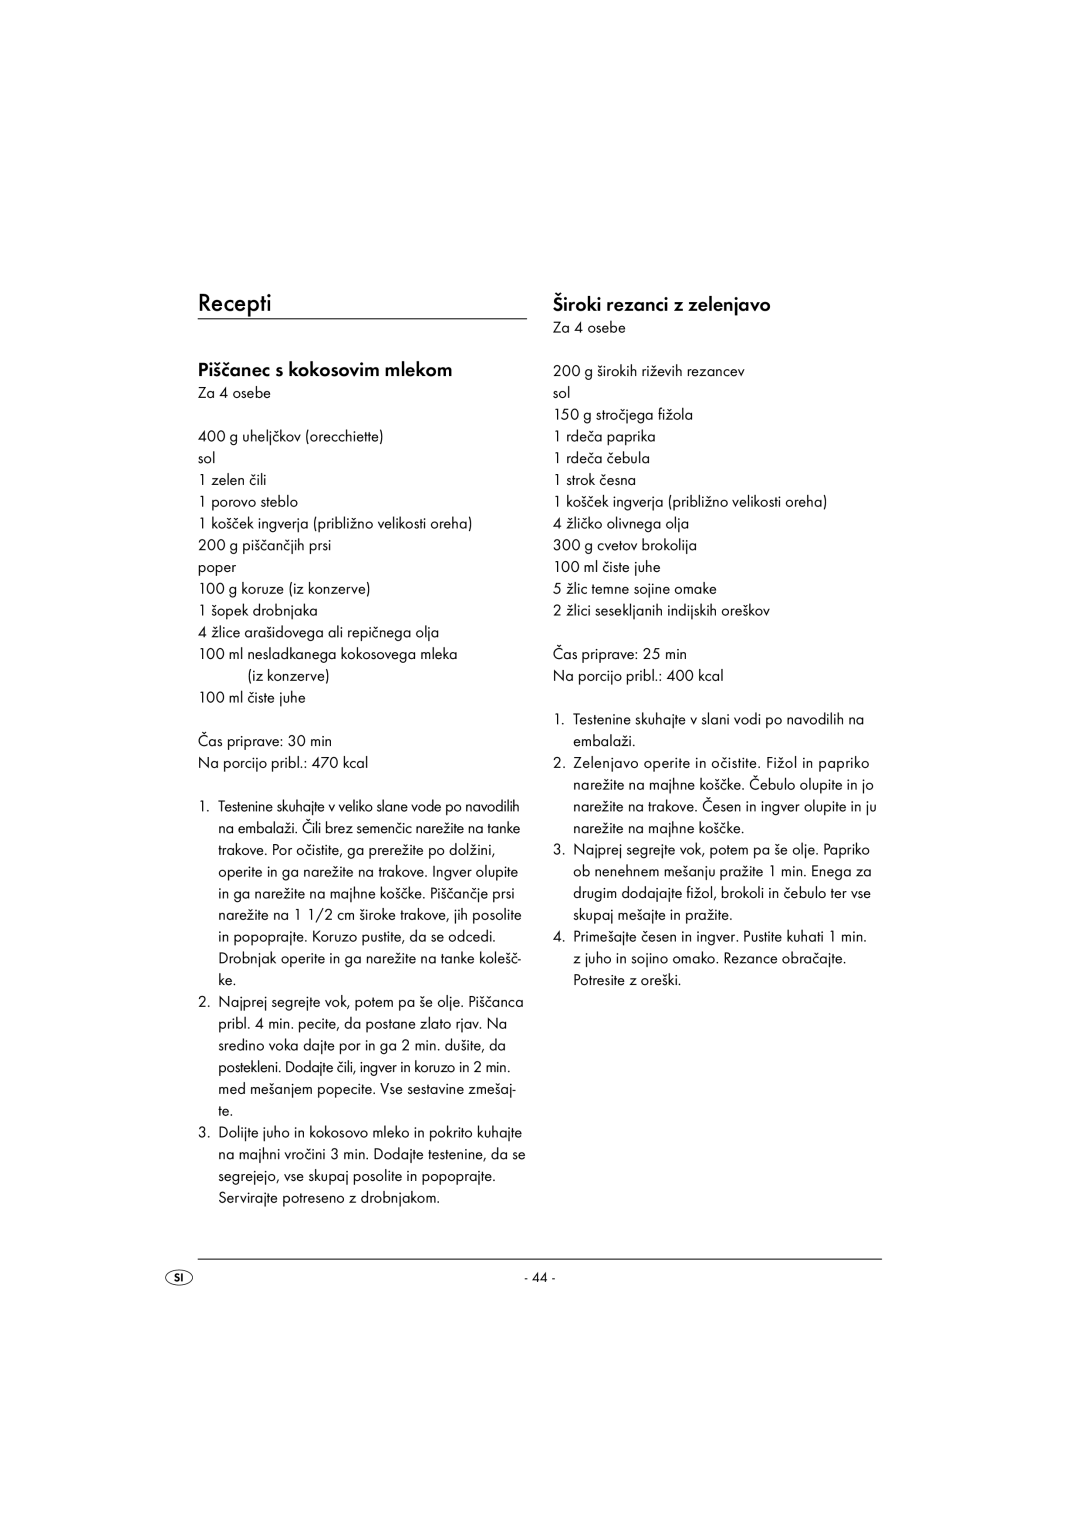 Kompernass KH 1099 manual Recepti, Piščanec s kokosovim mlekom, Široki rezanci z zelenjavo 